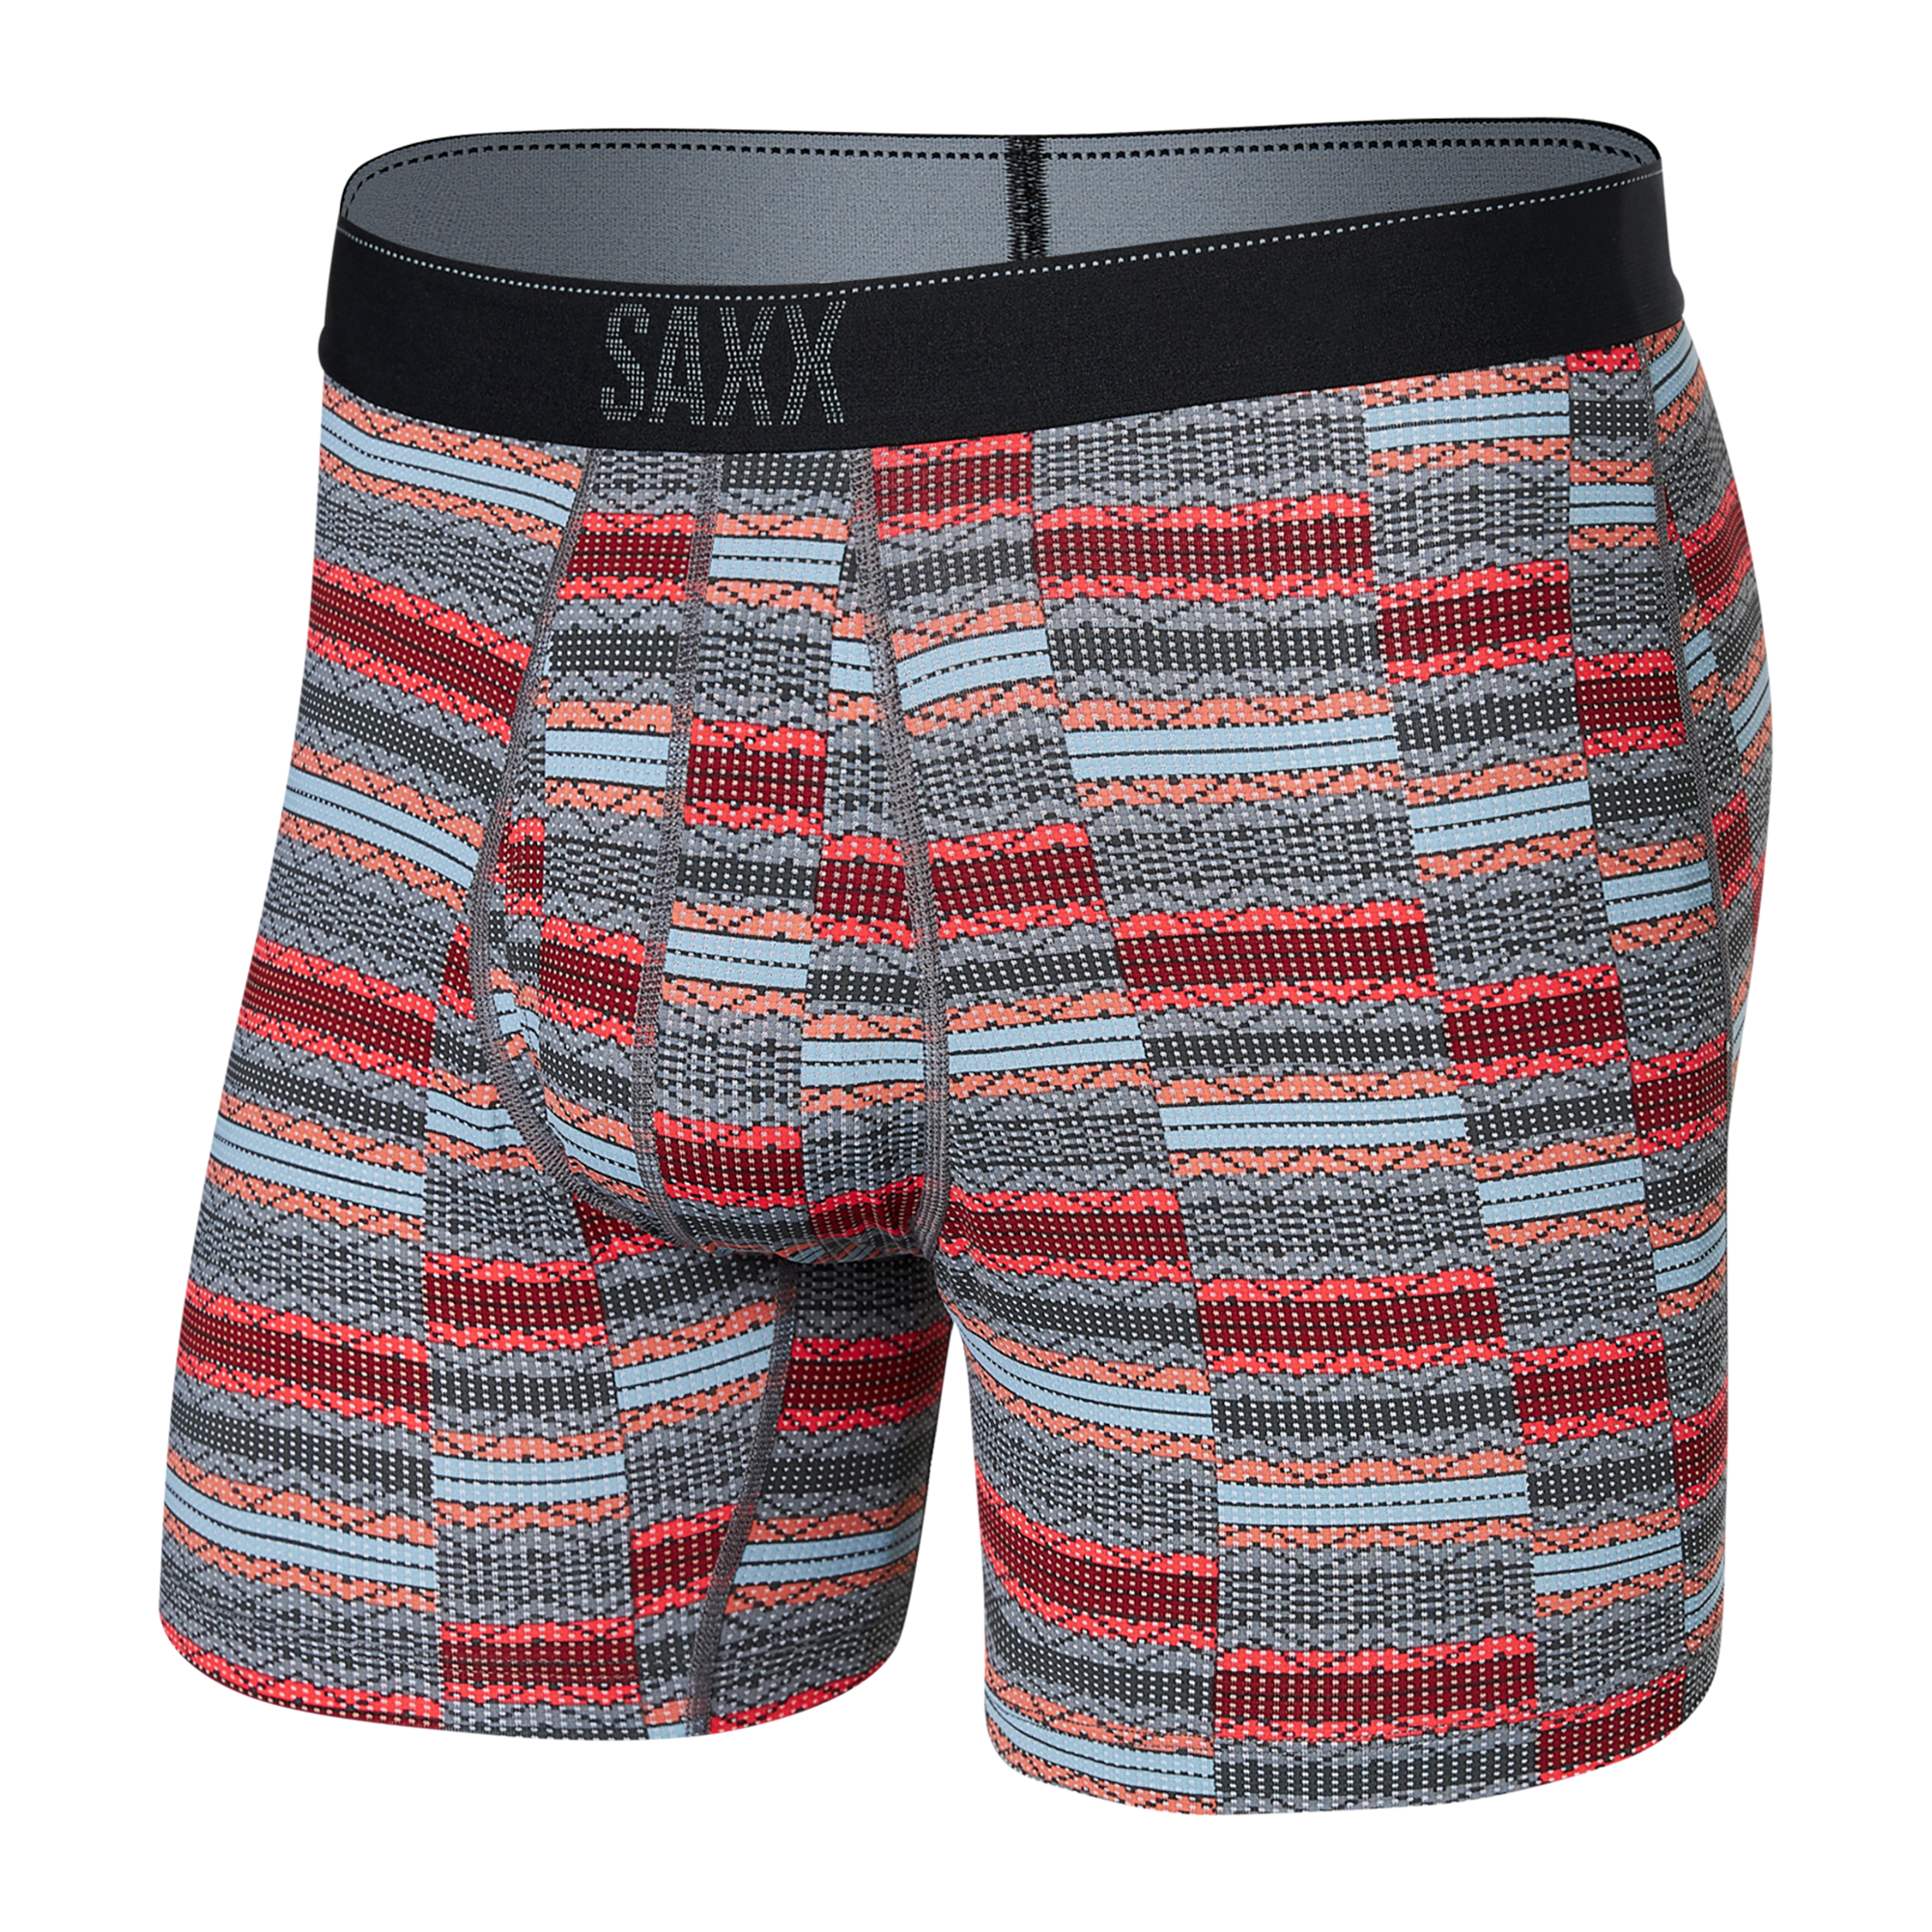 Quest Boxer Brief Underwear Saxx   